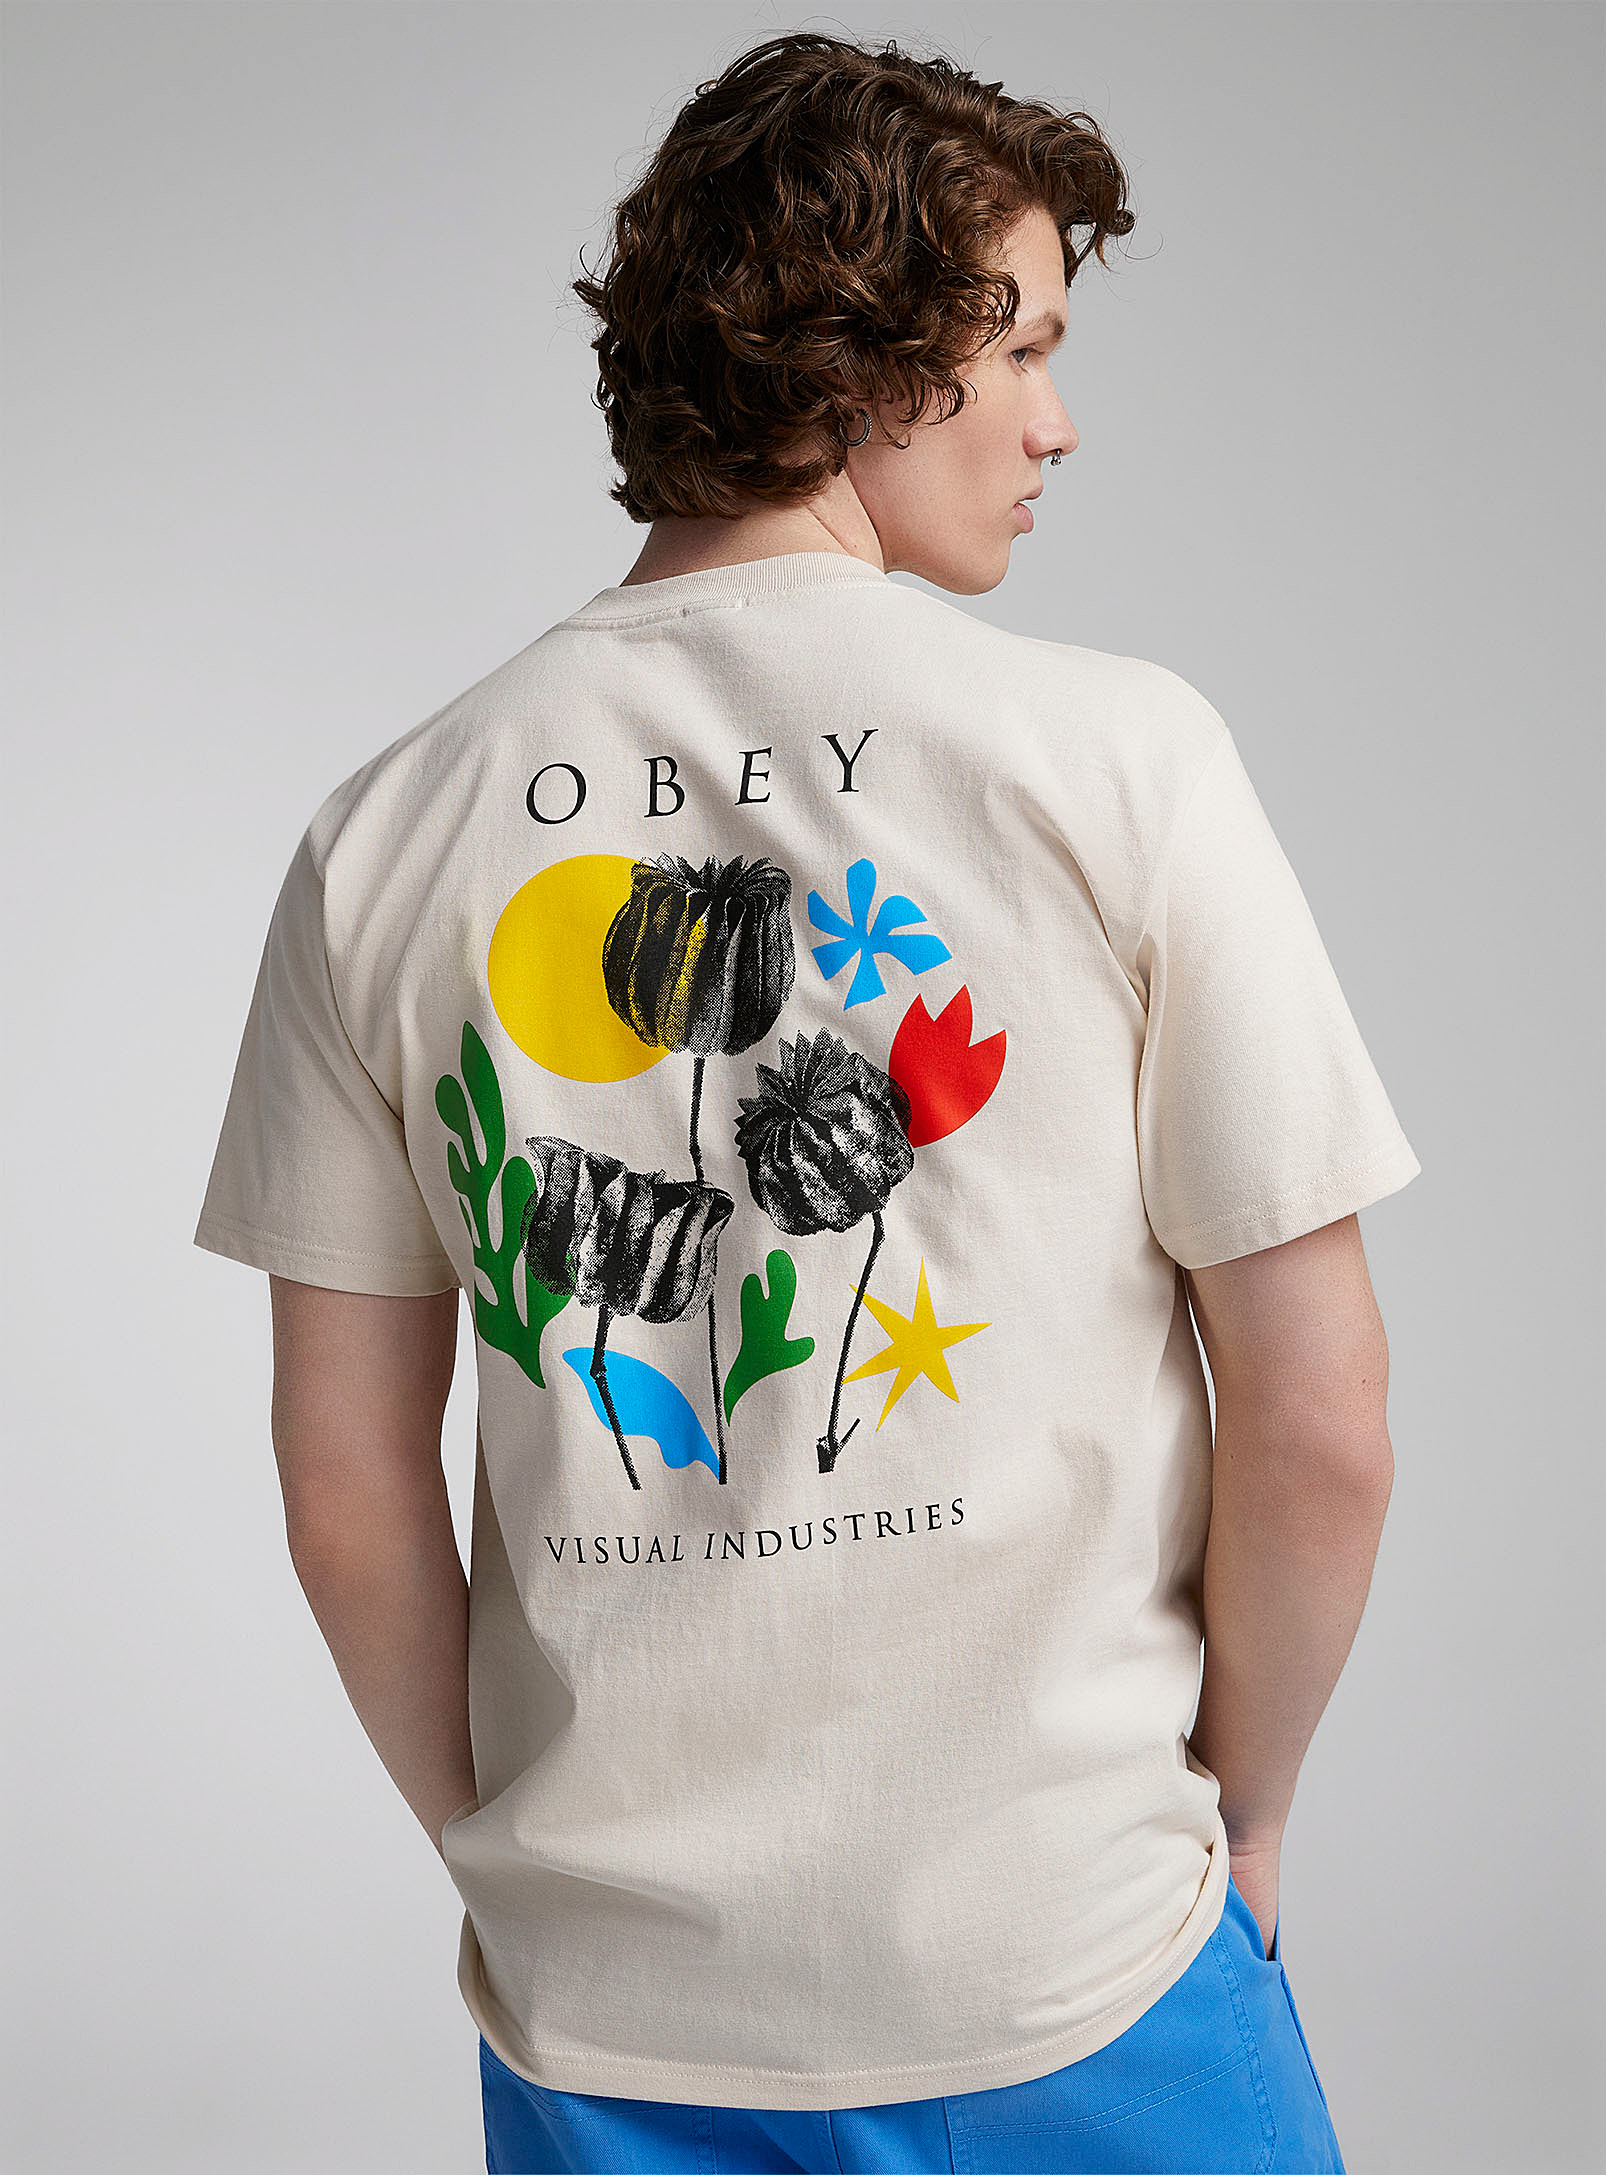 Obey - Le t-shirt fleur papier ciseaux